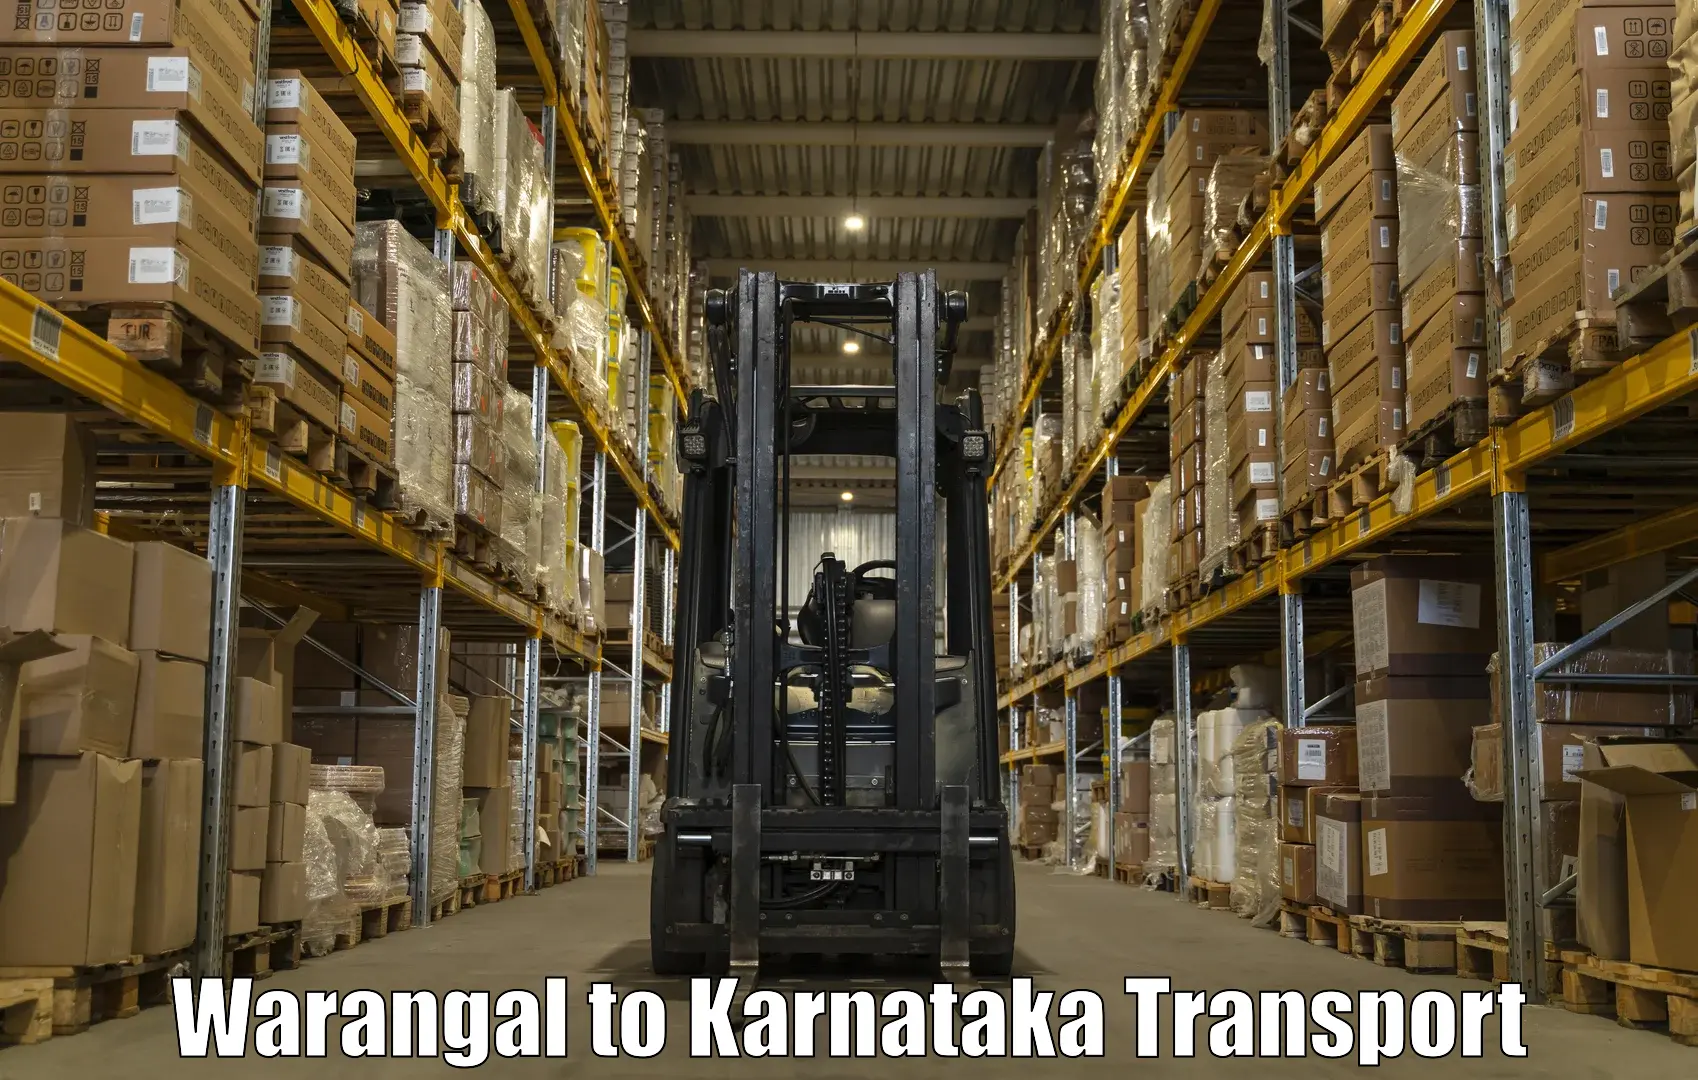 Intercity transport Warangal to Karnataka